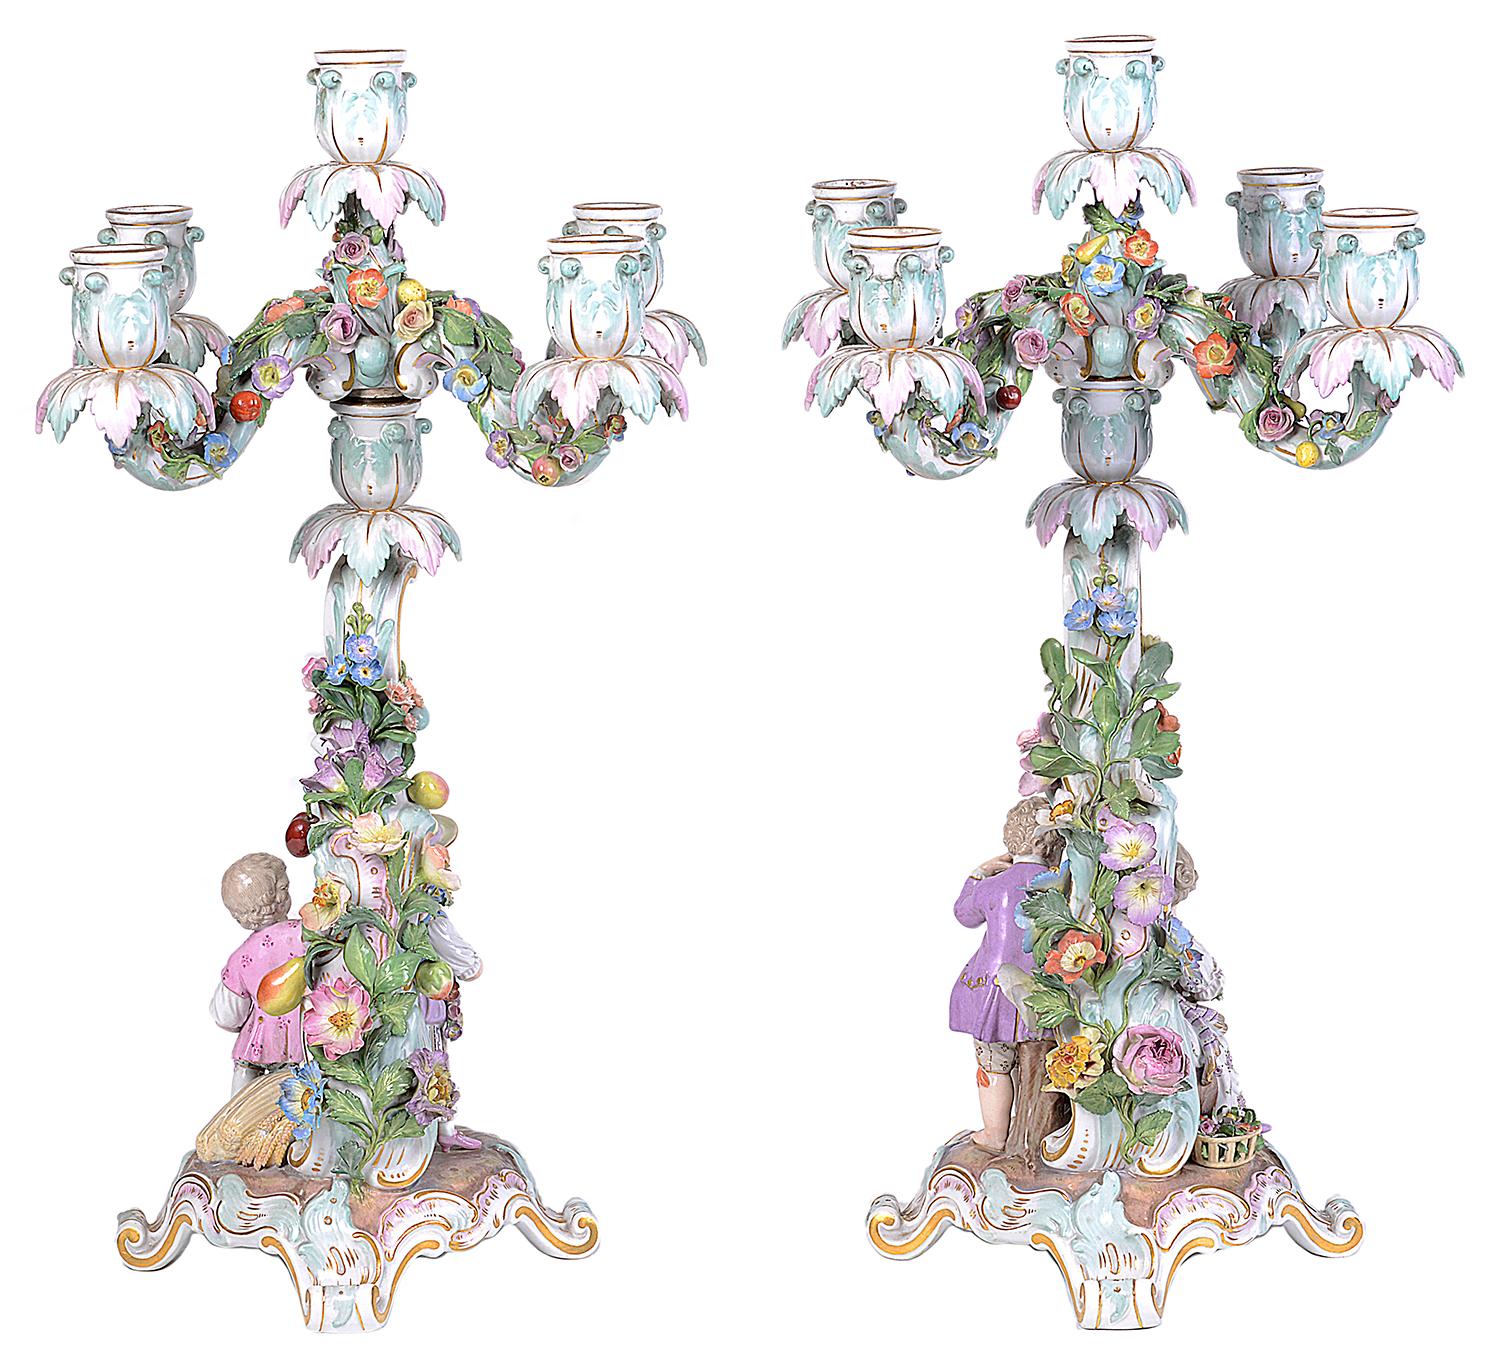 Paire de candélabres à cinq branches en porcelaine de Meissen de bonne qualité, datant du 19e siècle. Chaque candélabre est orné d'un magnifique décor floral et fruitier, avec des figures d'enfants jouant sous le candélabre et reposant sur des pieds